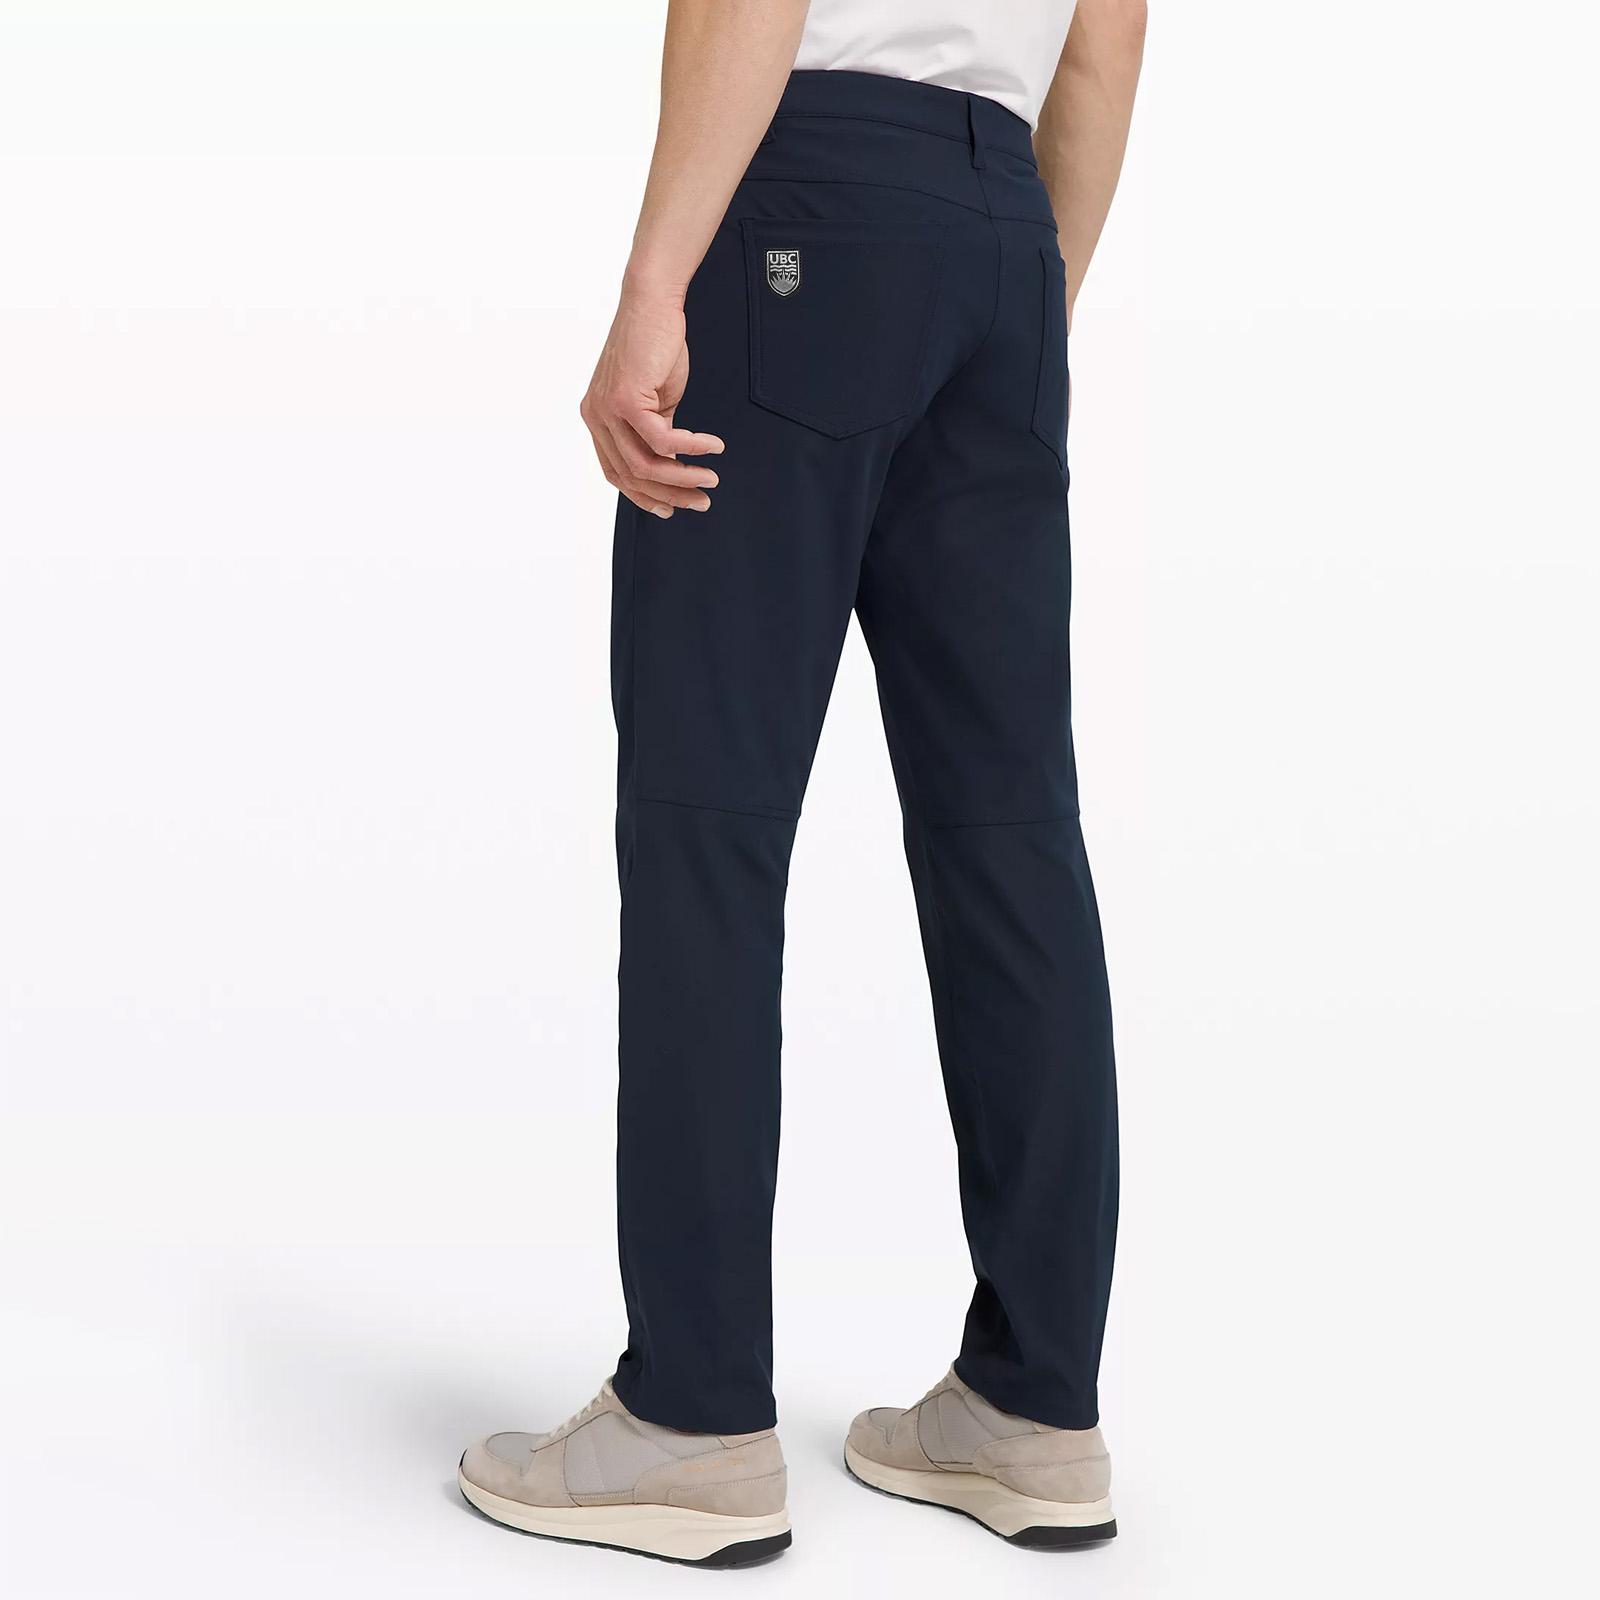 Lululemon ABC Pant Classic  Mens pants size chart, Clothes design